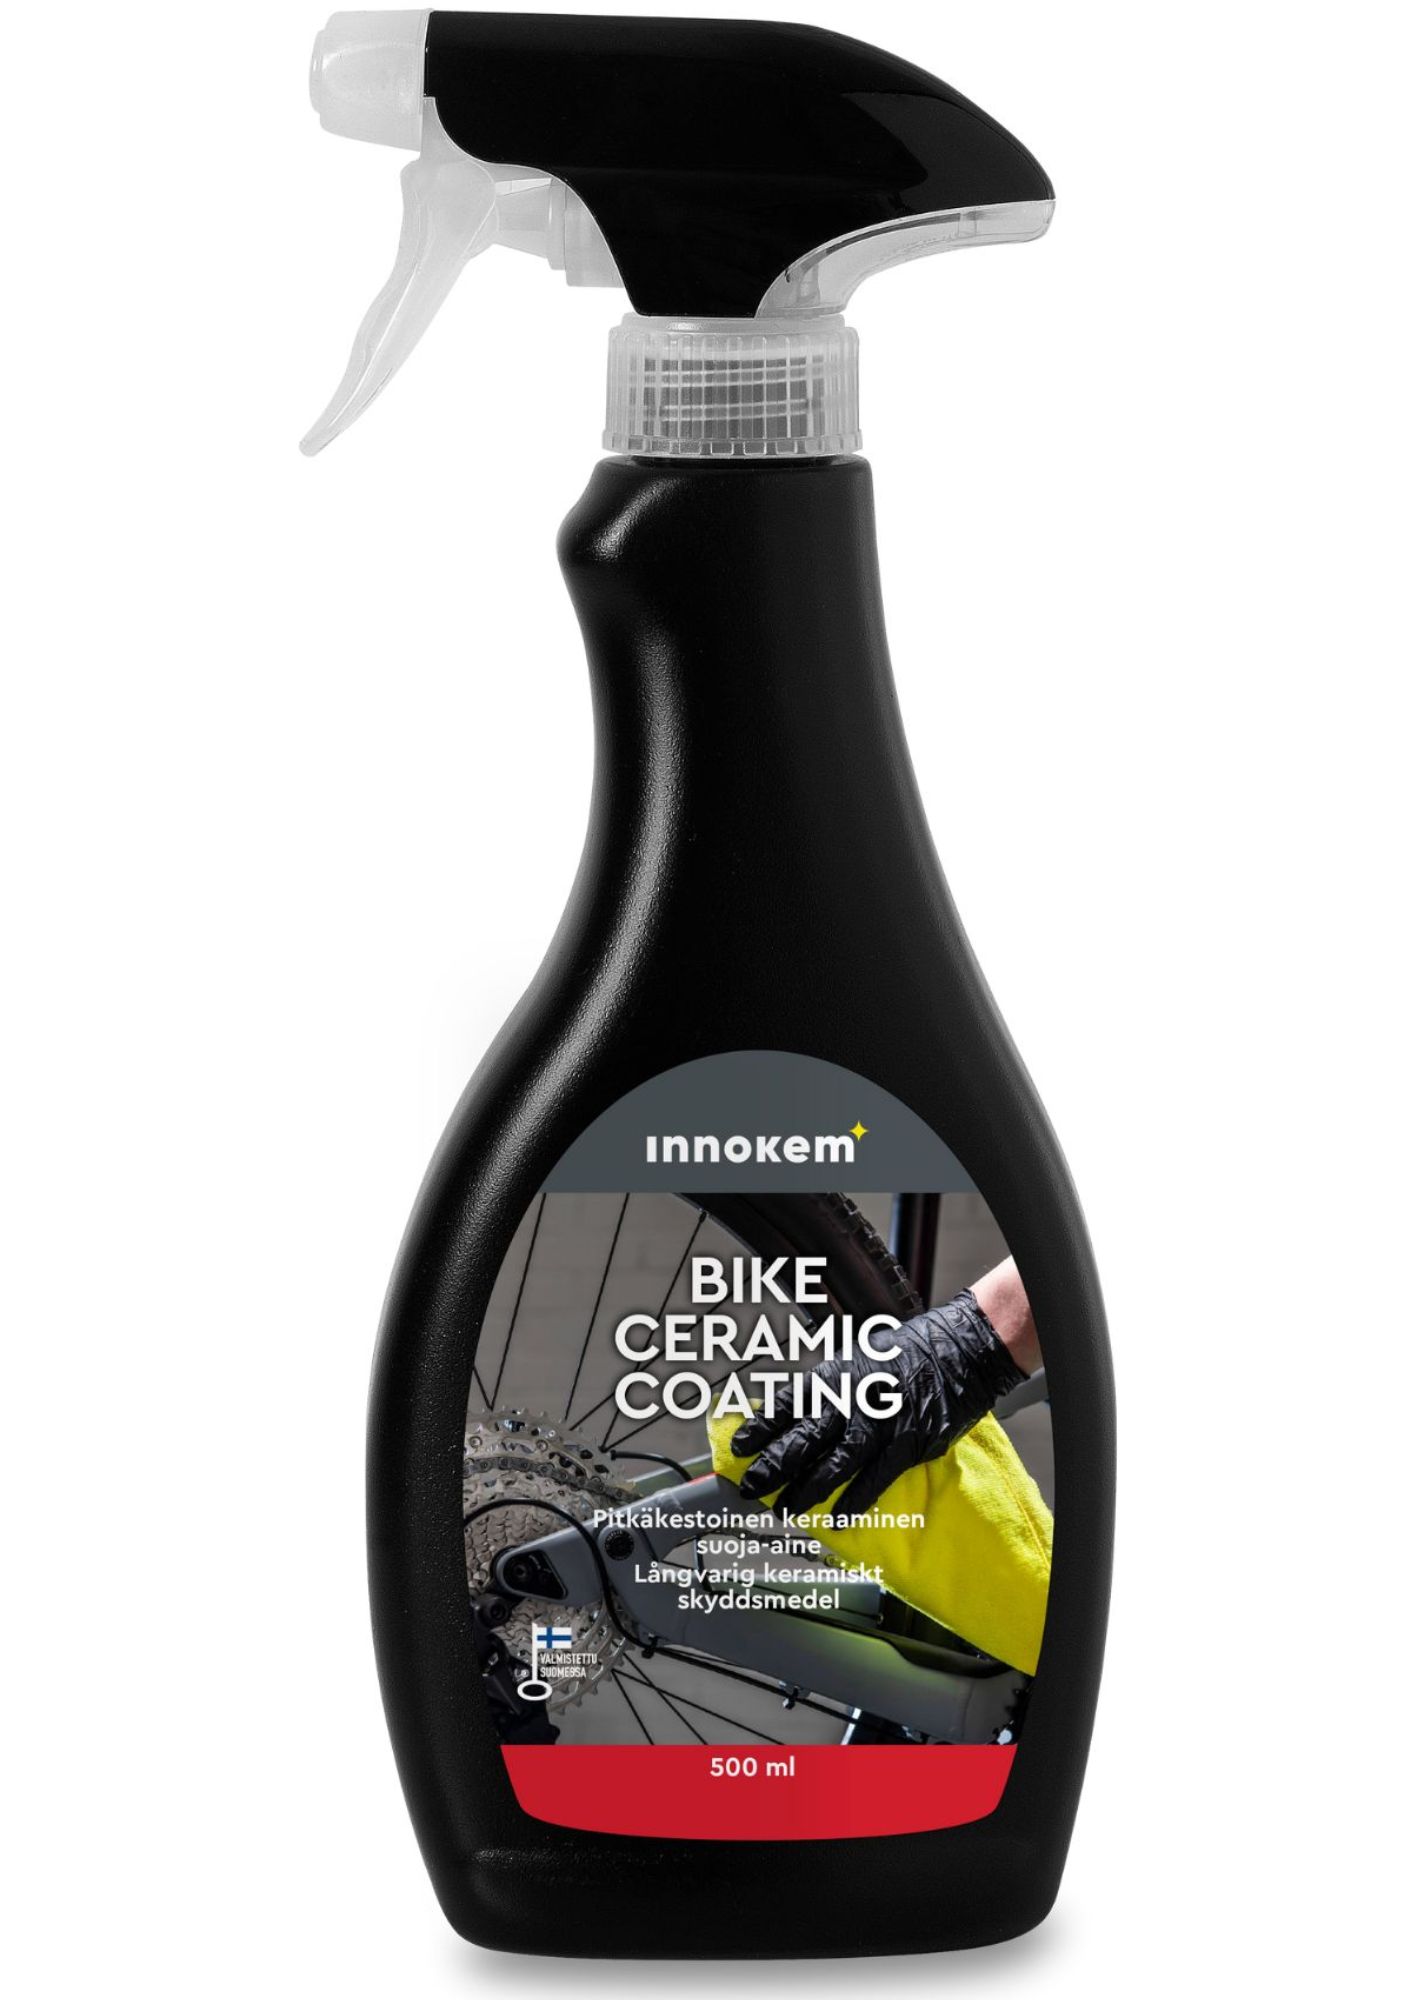 innokem bike ceramic coating coating 500ml